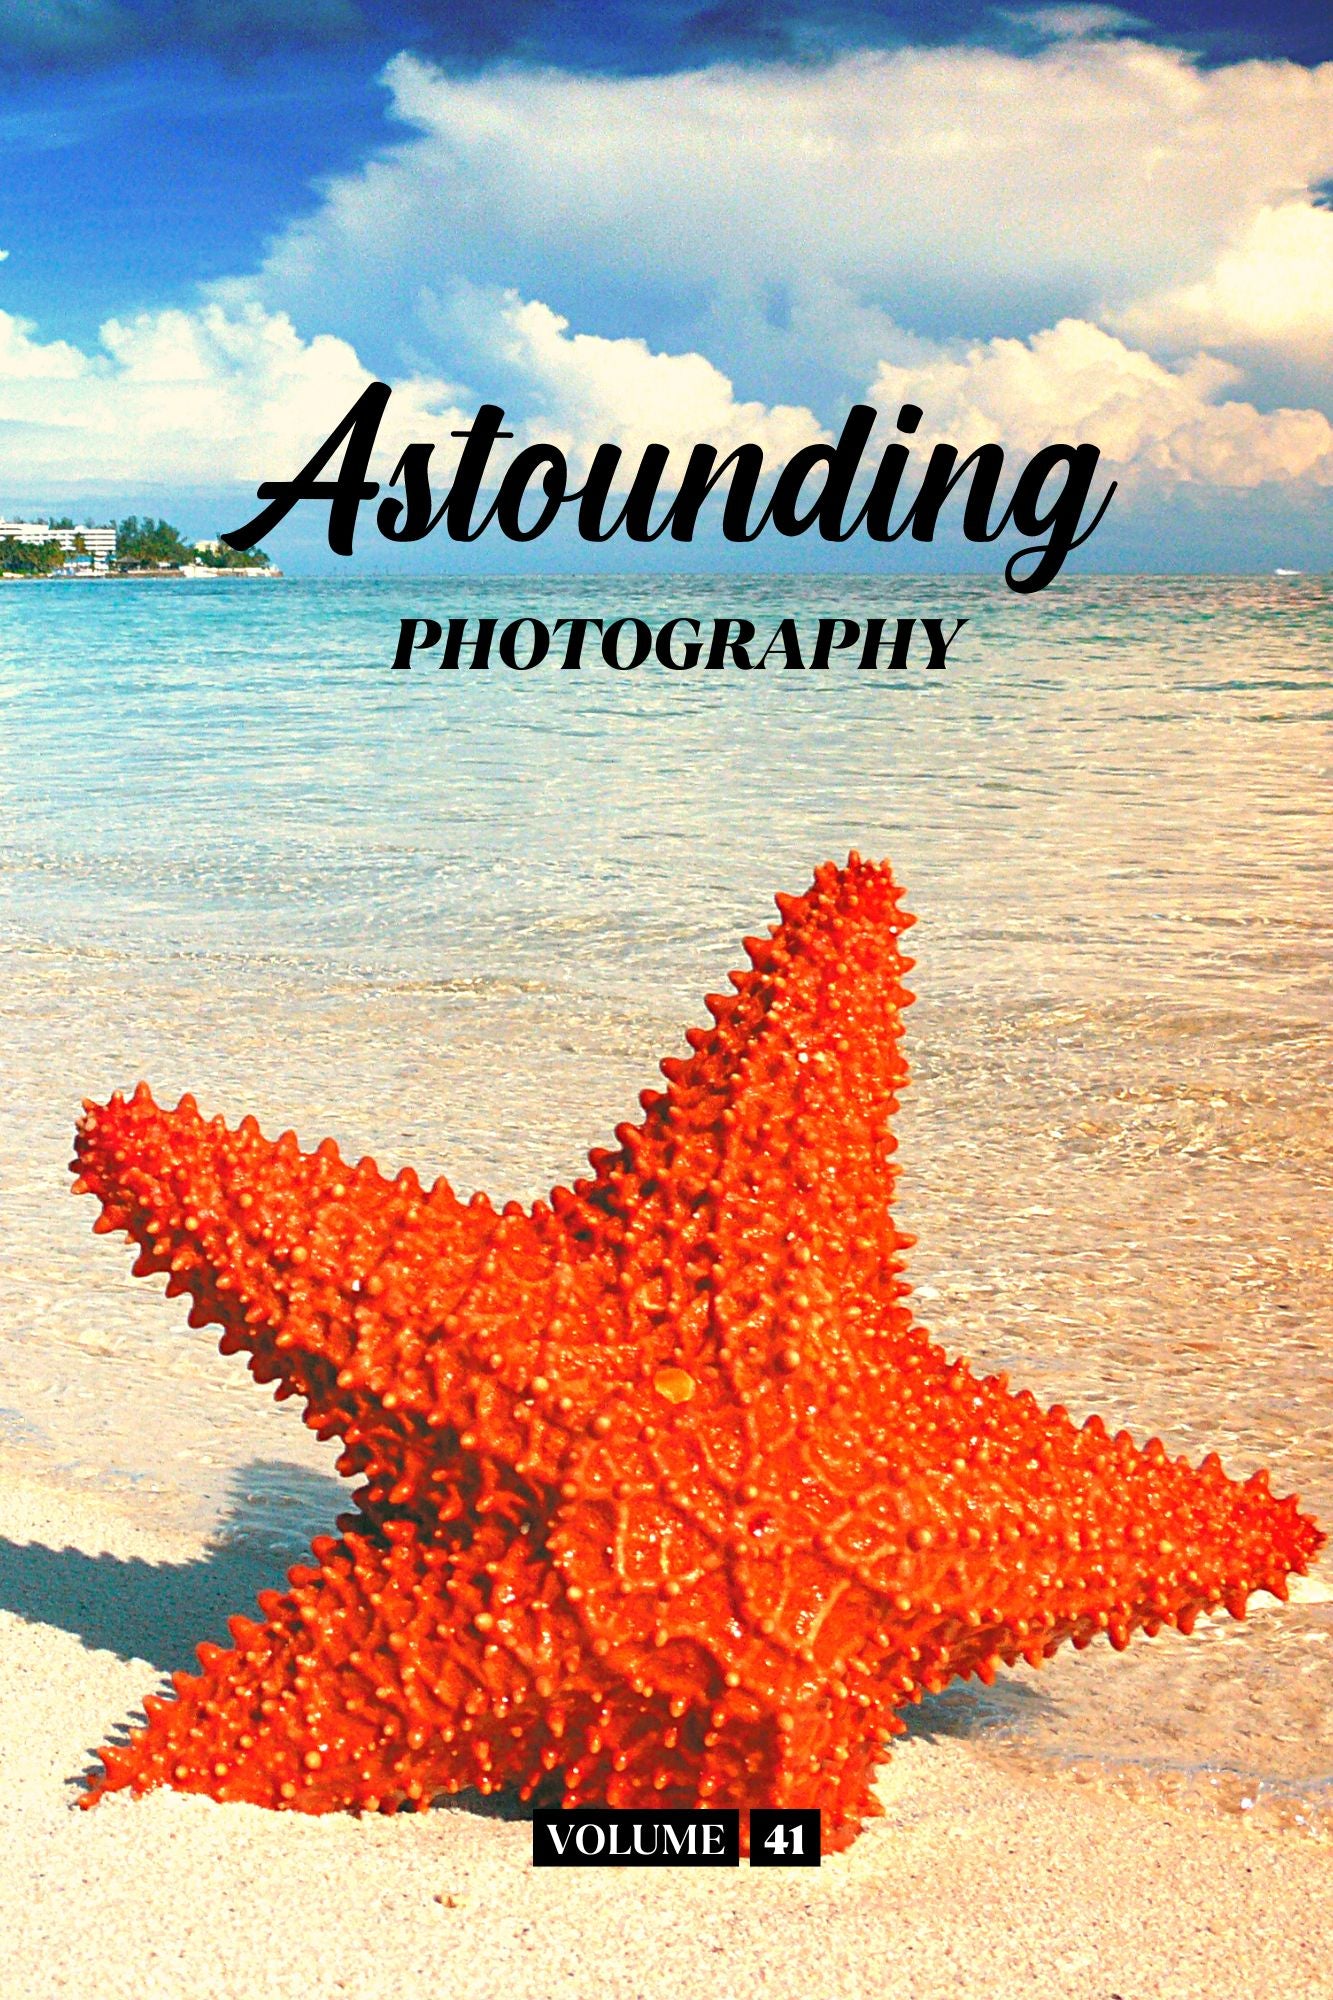 Astounding Photography Volume 41 (Physical Book Pre-Order)